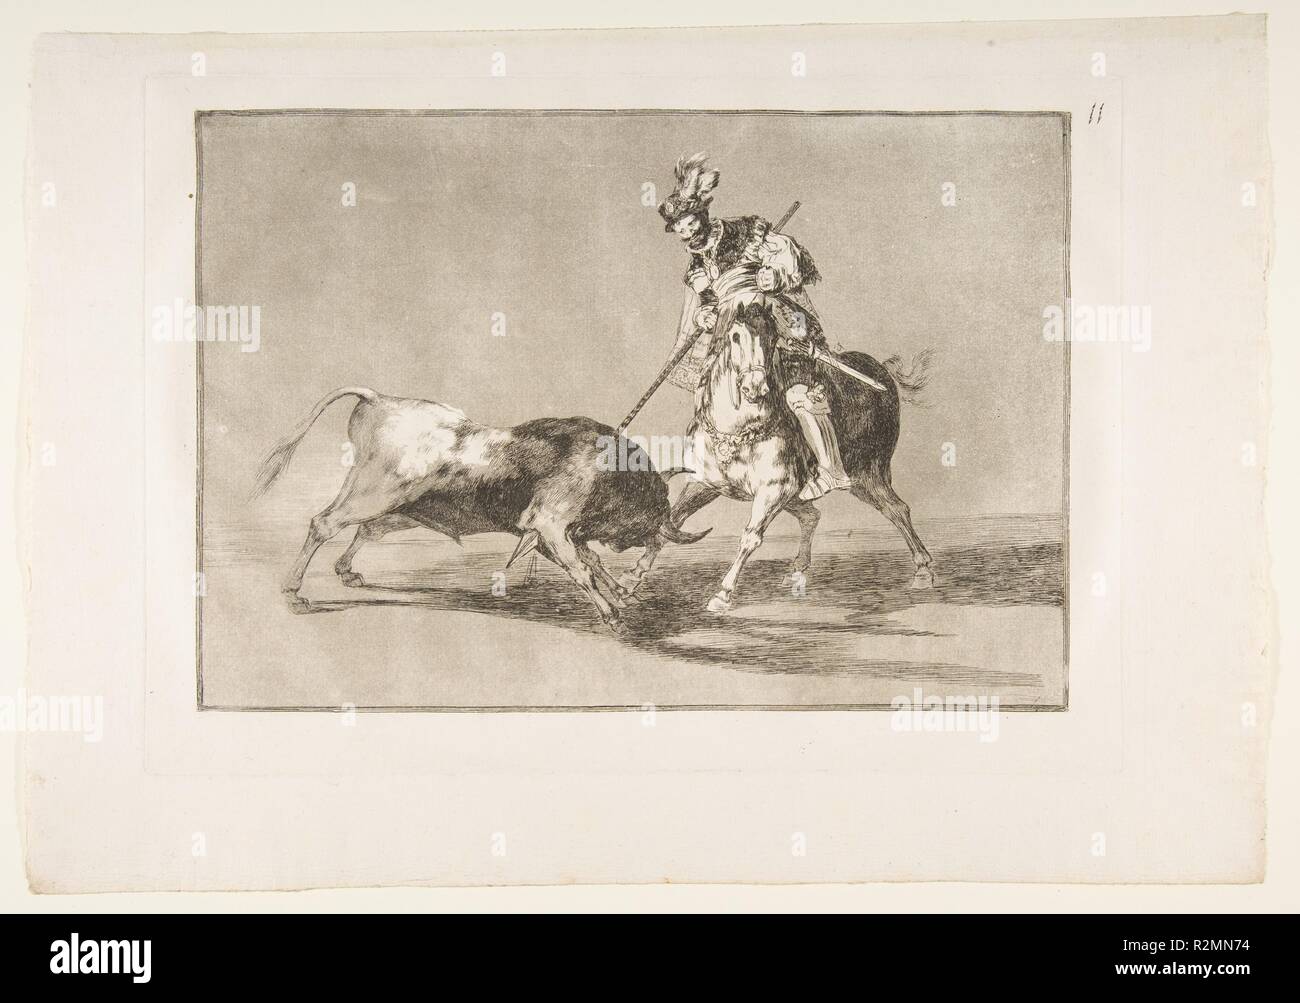 Planche 11 de la Tauromaquia':l'Hotel Nobel harponner un autre taureau. Artiste : Goya (Francisco de Goya y Lucientes (Fuendetodos) espagnol, 1746-1828 Bordeaux). Plaque : 9 Dimensions : 13/16 x 13 3/4 in. (25 × 35 cm) feuille : 12 × 1/16 17 5/16 in. (30,7 × 44 cm). Date : 1816. Musée : Metropolitan Museum of Art, New York, USA. Banque D'Images